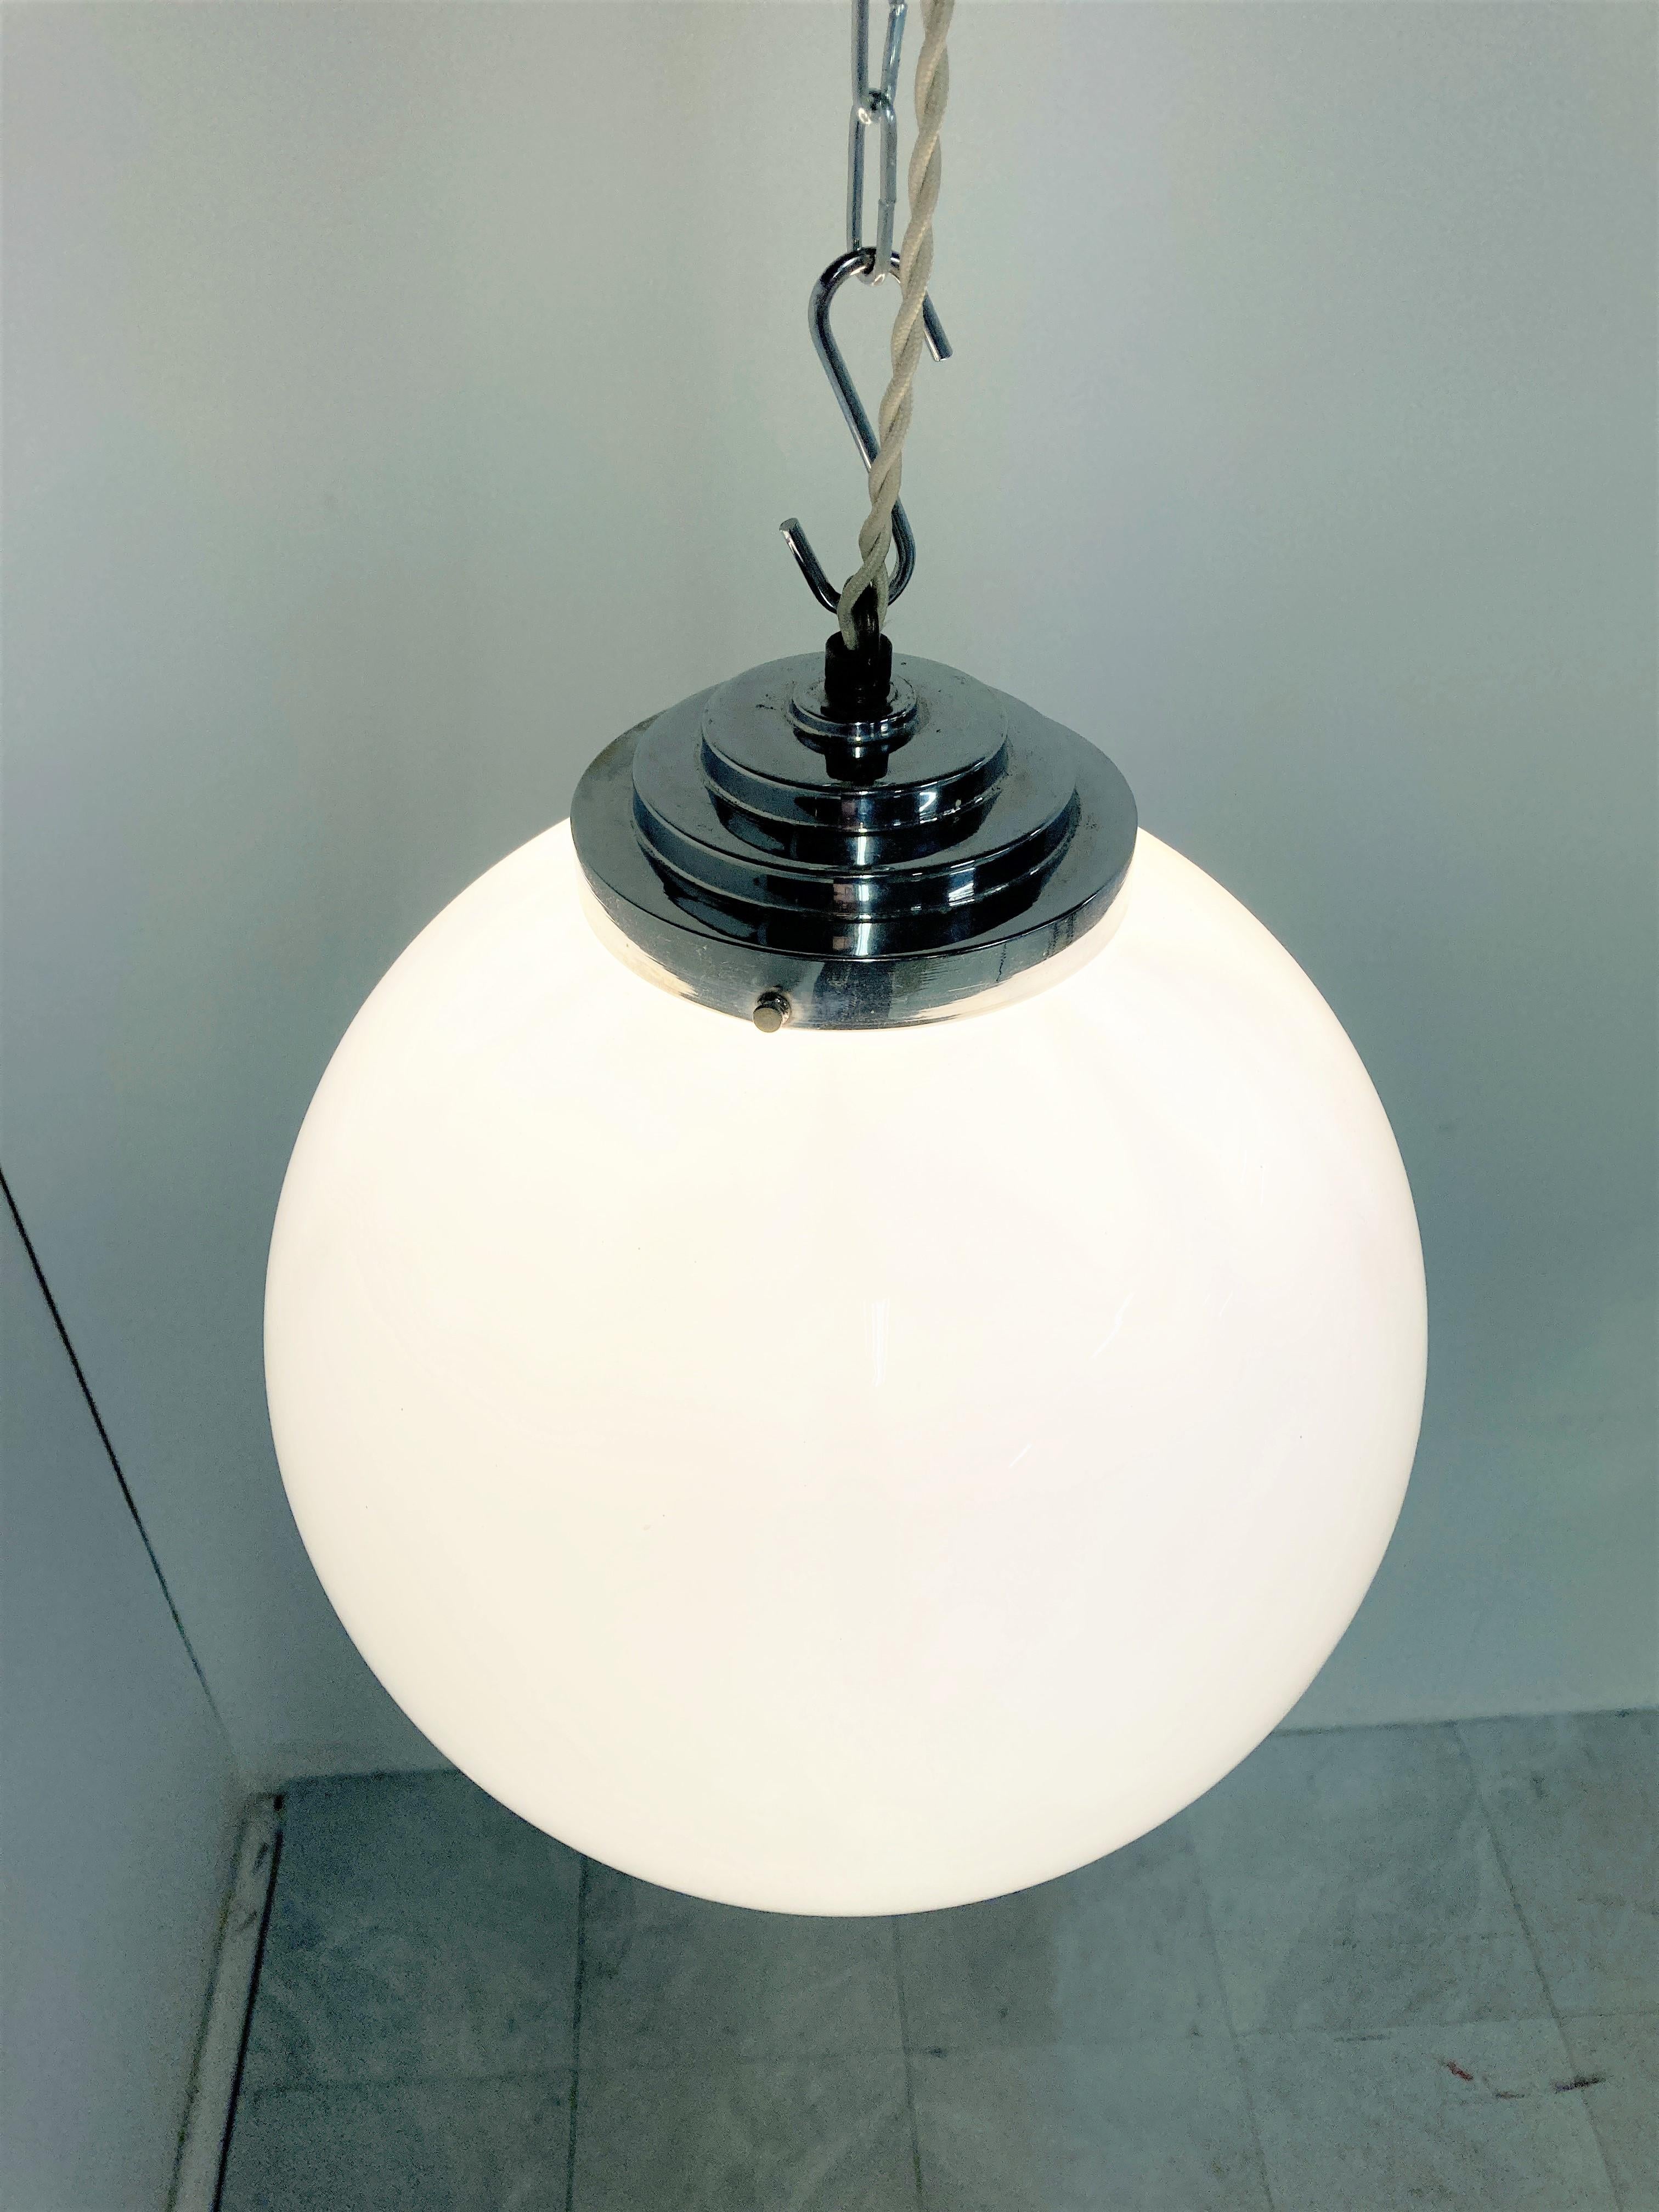 Antike Art-Deco-Hängeleuchte für den Flur.

Diese Lampe ist sehr typisch für die Art-Déco-Ära und war weit verbreitet, um in Fluren, Büros oder größeren öffentlichen Räumen aufgehängt zu werden.

Die Lampe hat die originale, gestufte,